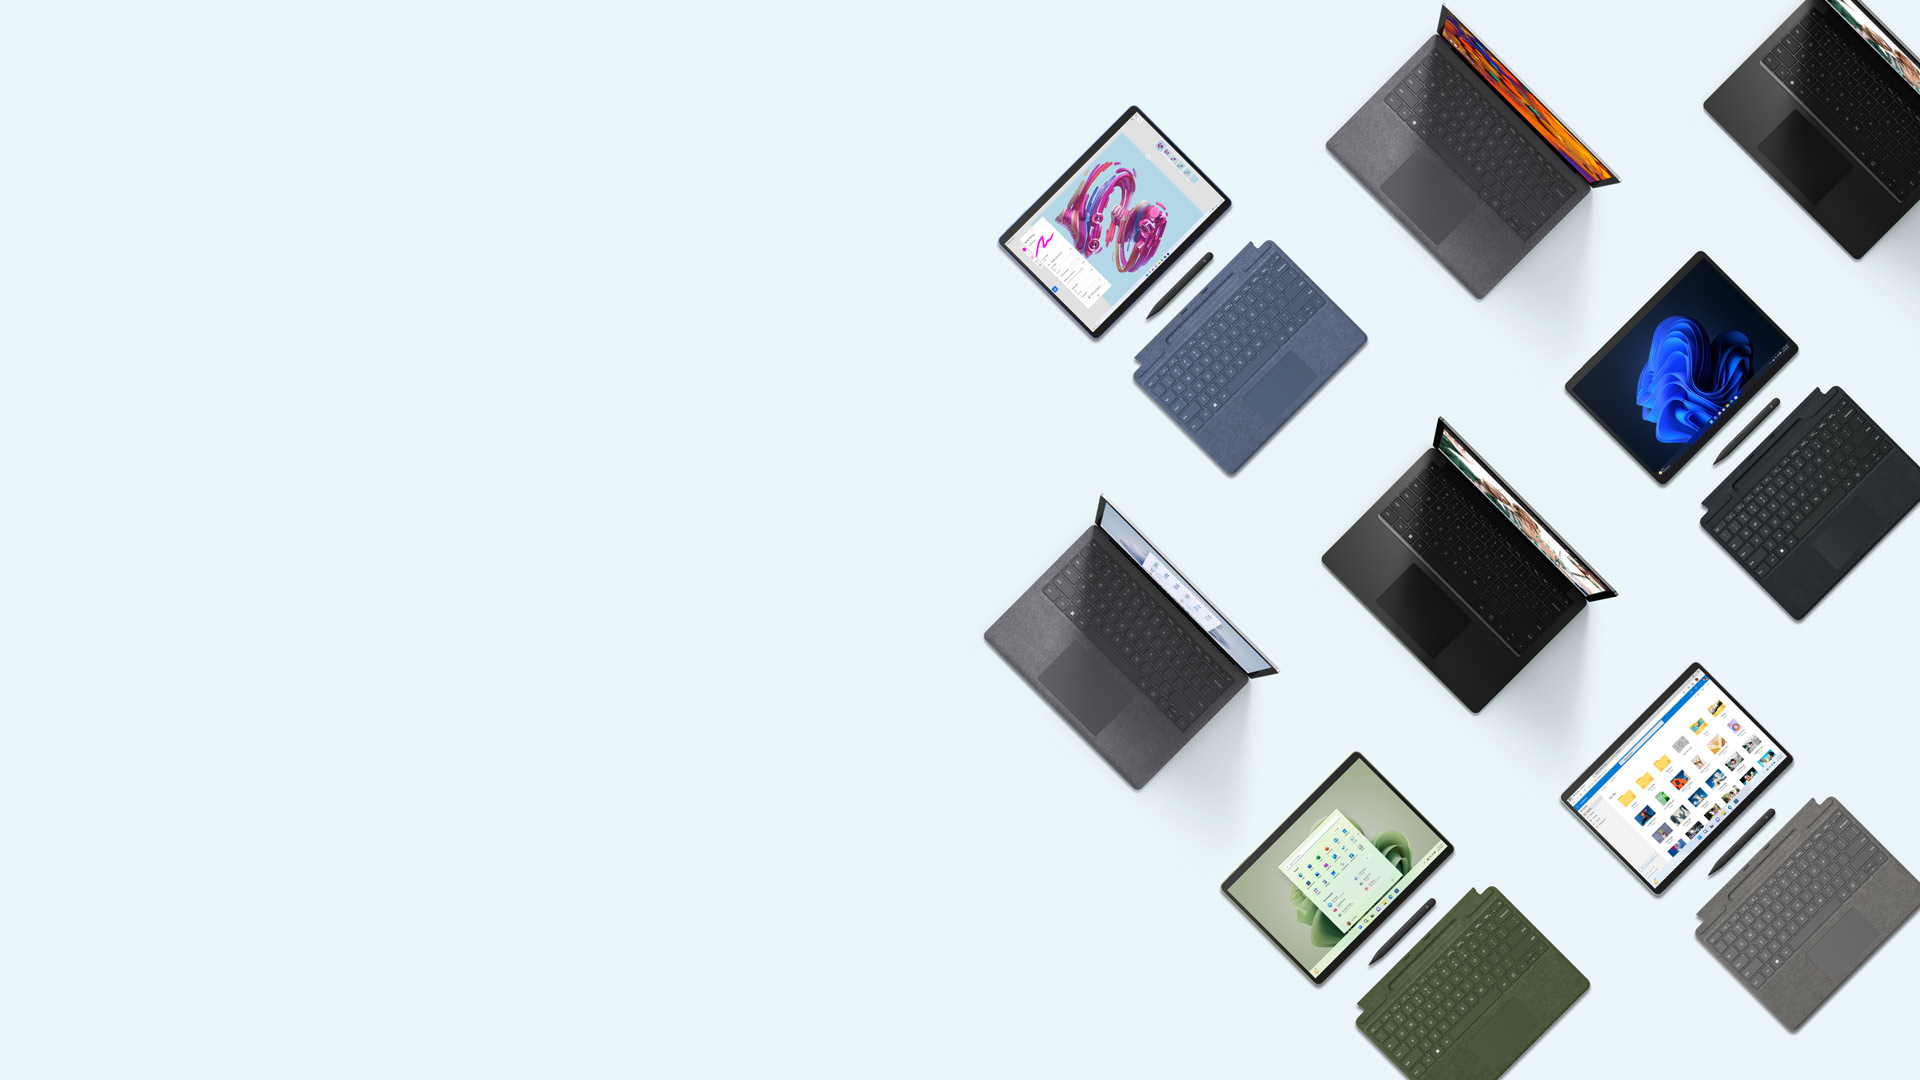 さまざまな色でタイプカバーの色もマッチした Surface Pro 9 と、Surface Laptop 5 もさまざまな色のものを、いくつか上から見た画像